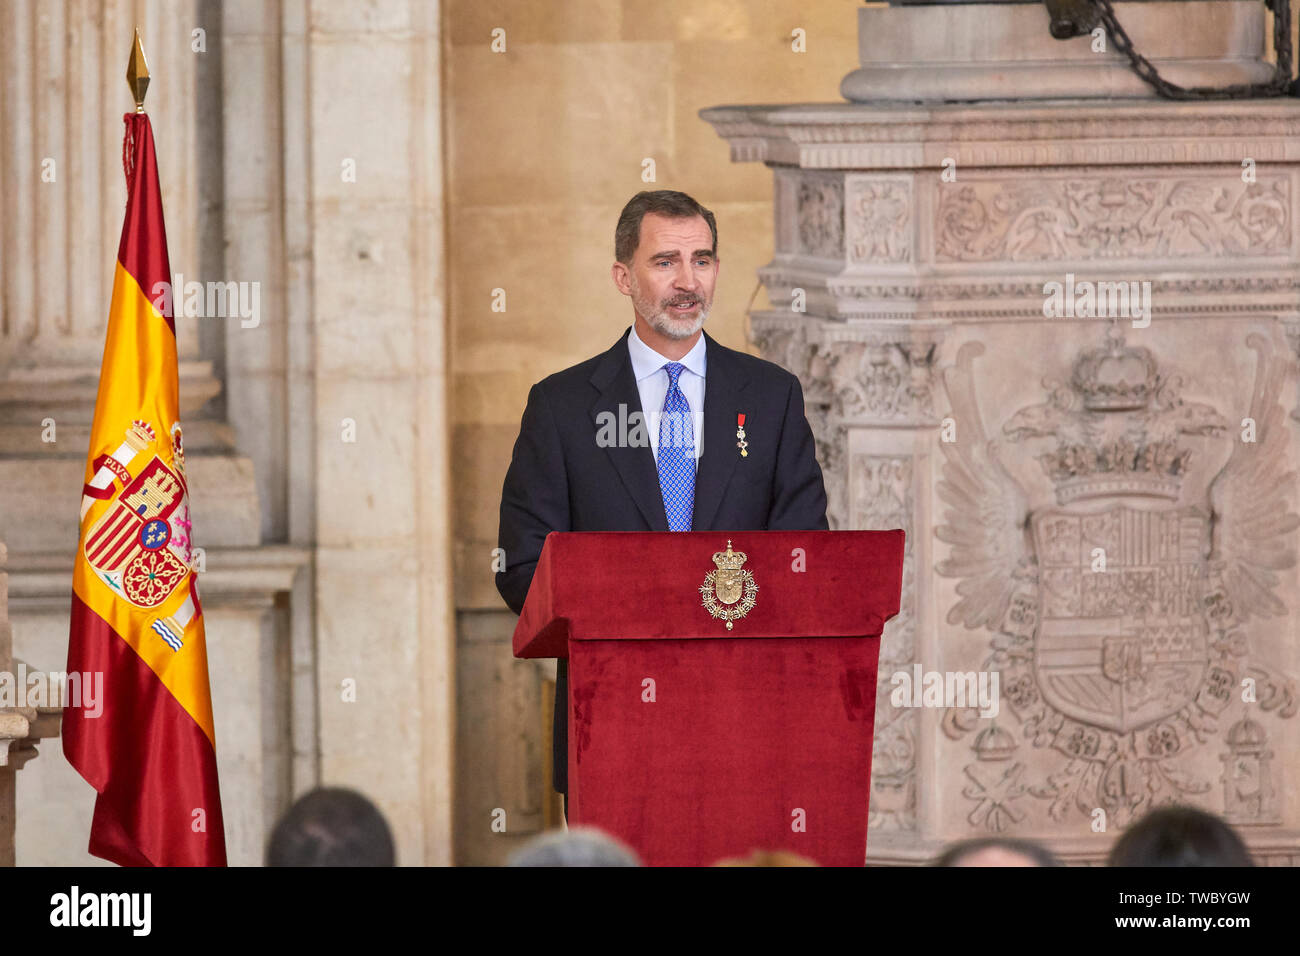 El rey Felipe VI de España, habla durante la imposición de condecoraciones de la Orden del Mérito Civil en el Palacio Real de Madrid. Foto de stock